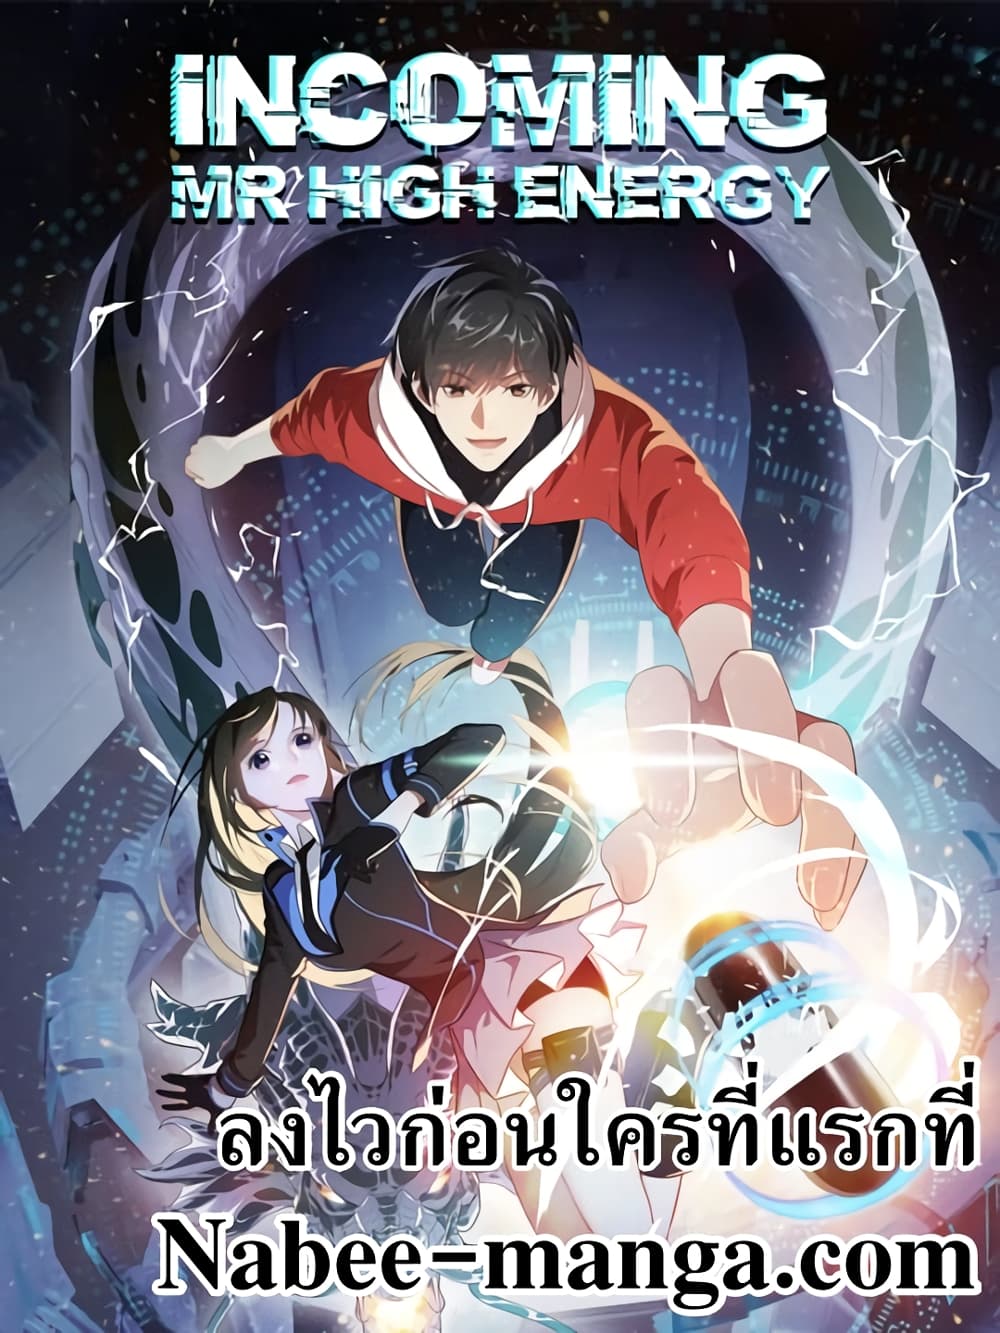 High Energy Strikes 114 (1)